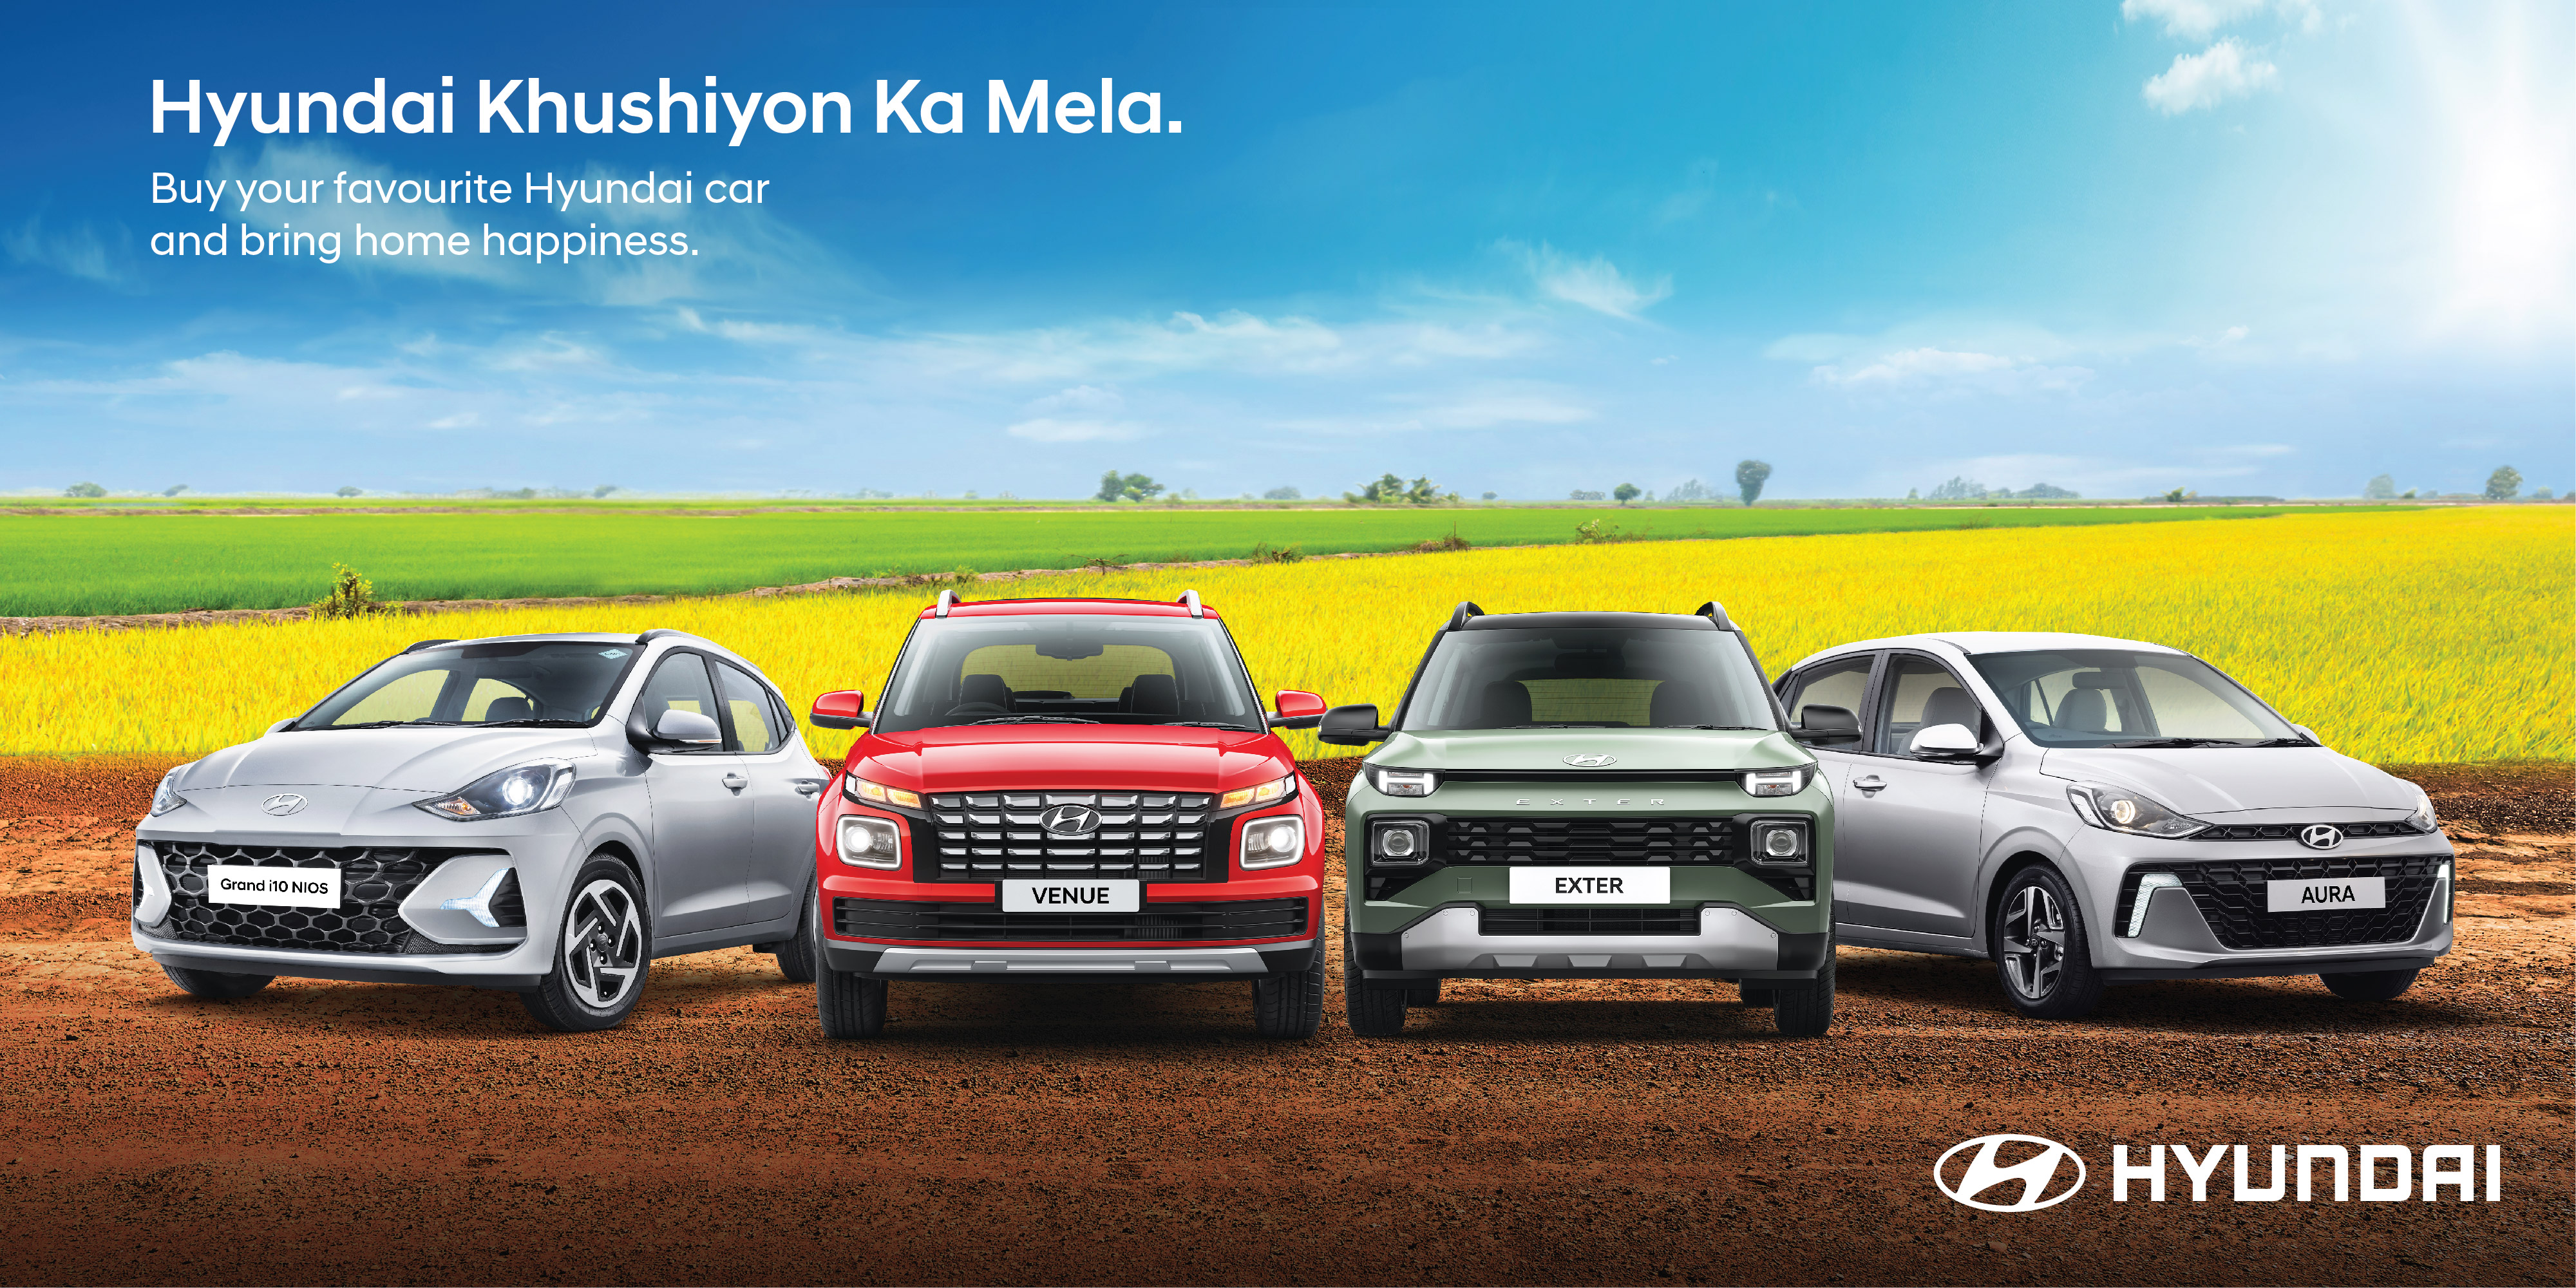 Hyundai Motor India Launches ‘Grameen Mahotsav